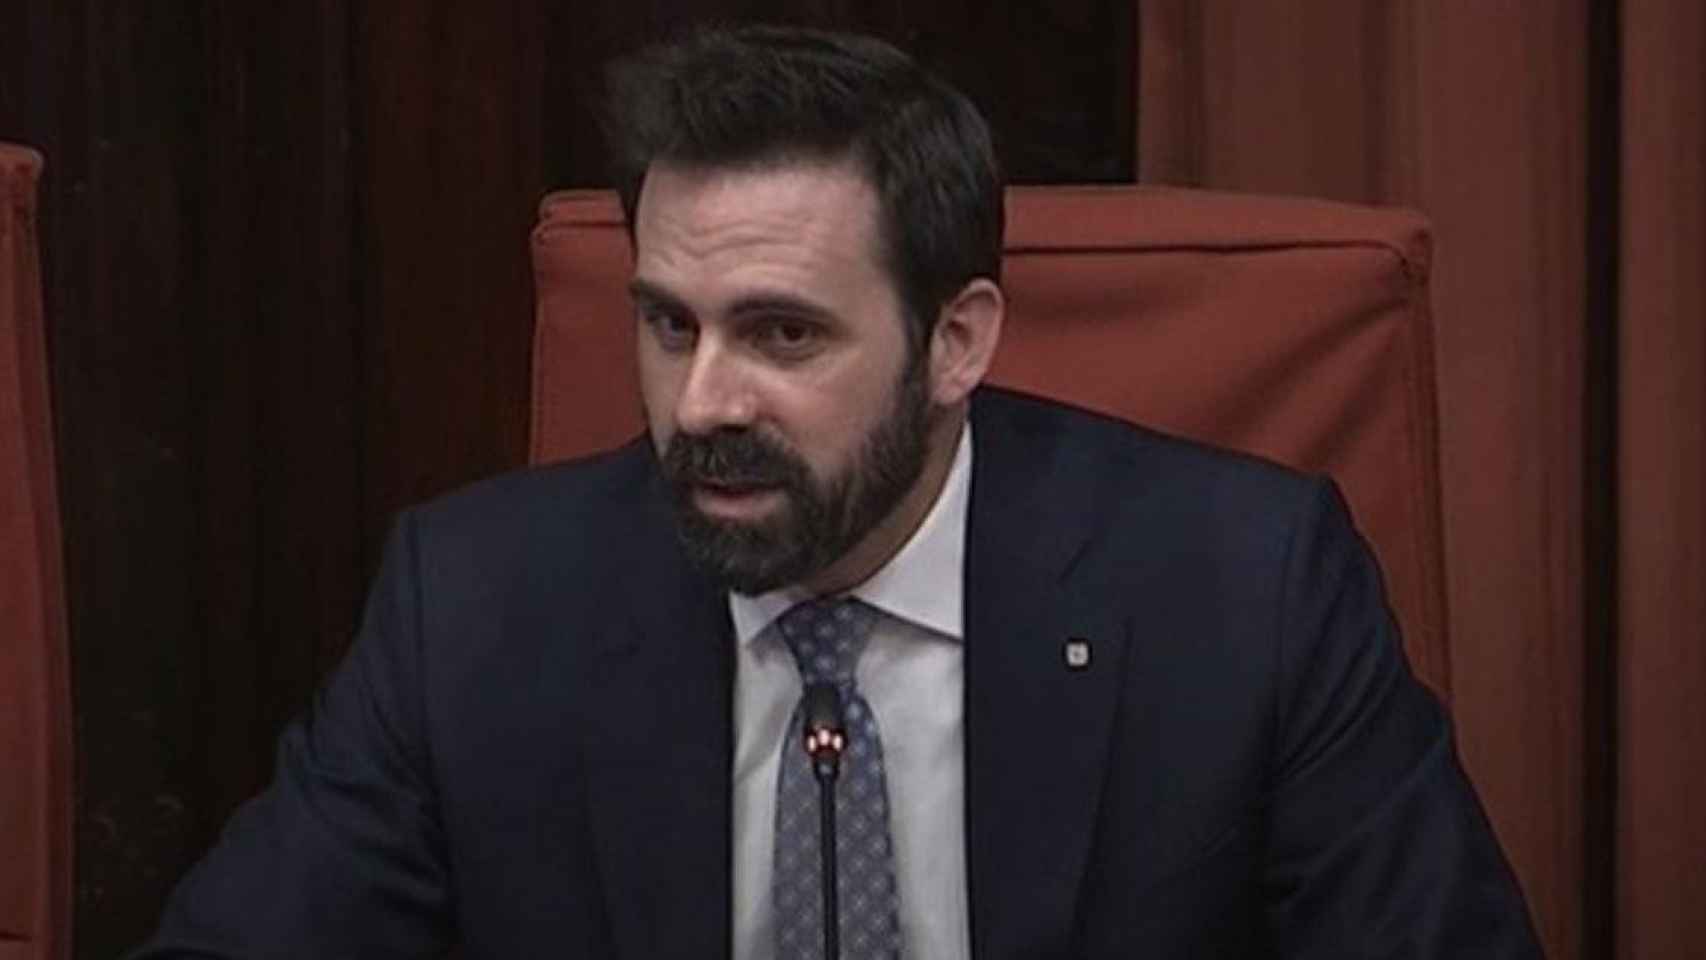 El secretario general de Economía y Hacienda de la Generalitat, Jordi Cabrafiga, en comisión parlamentaria este miércoles / PARLAMENT